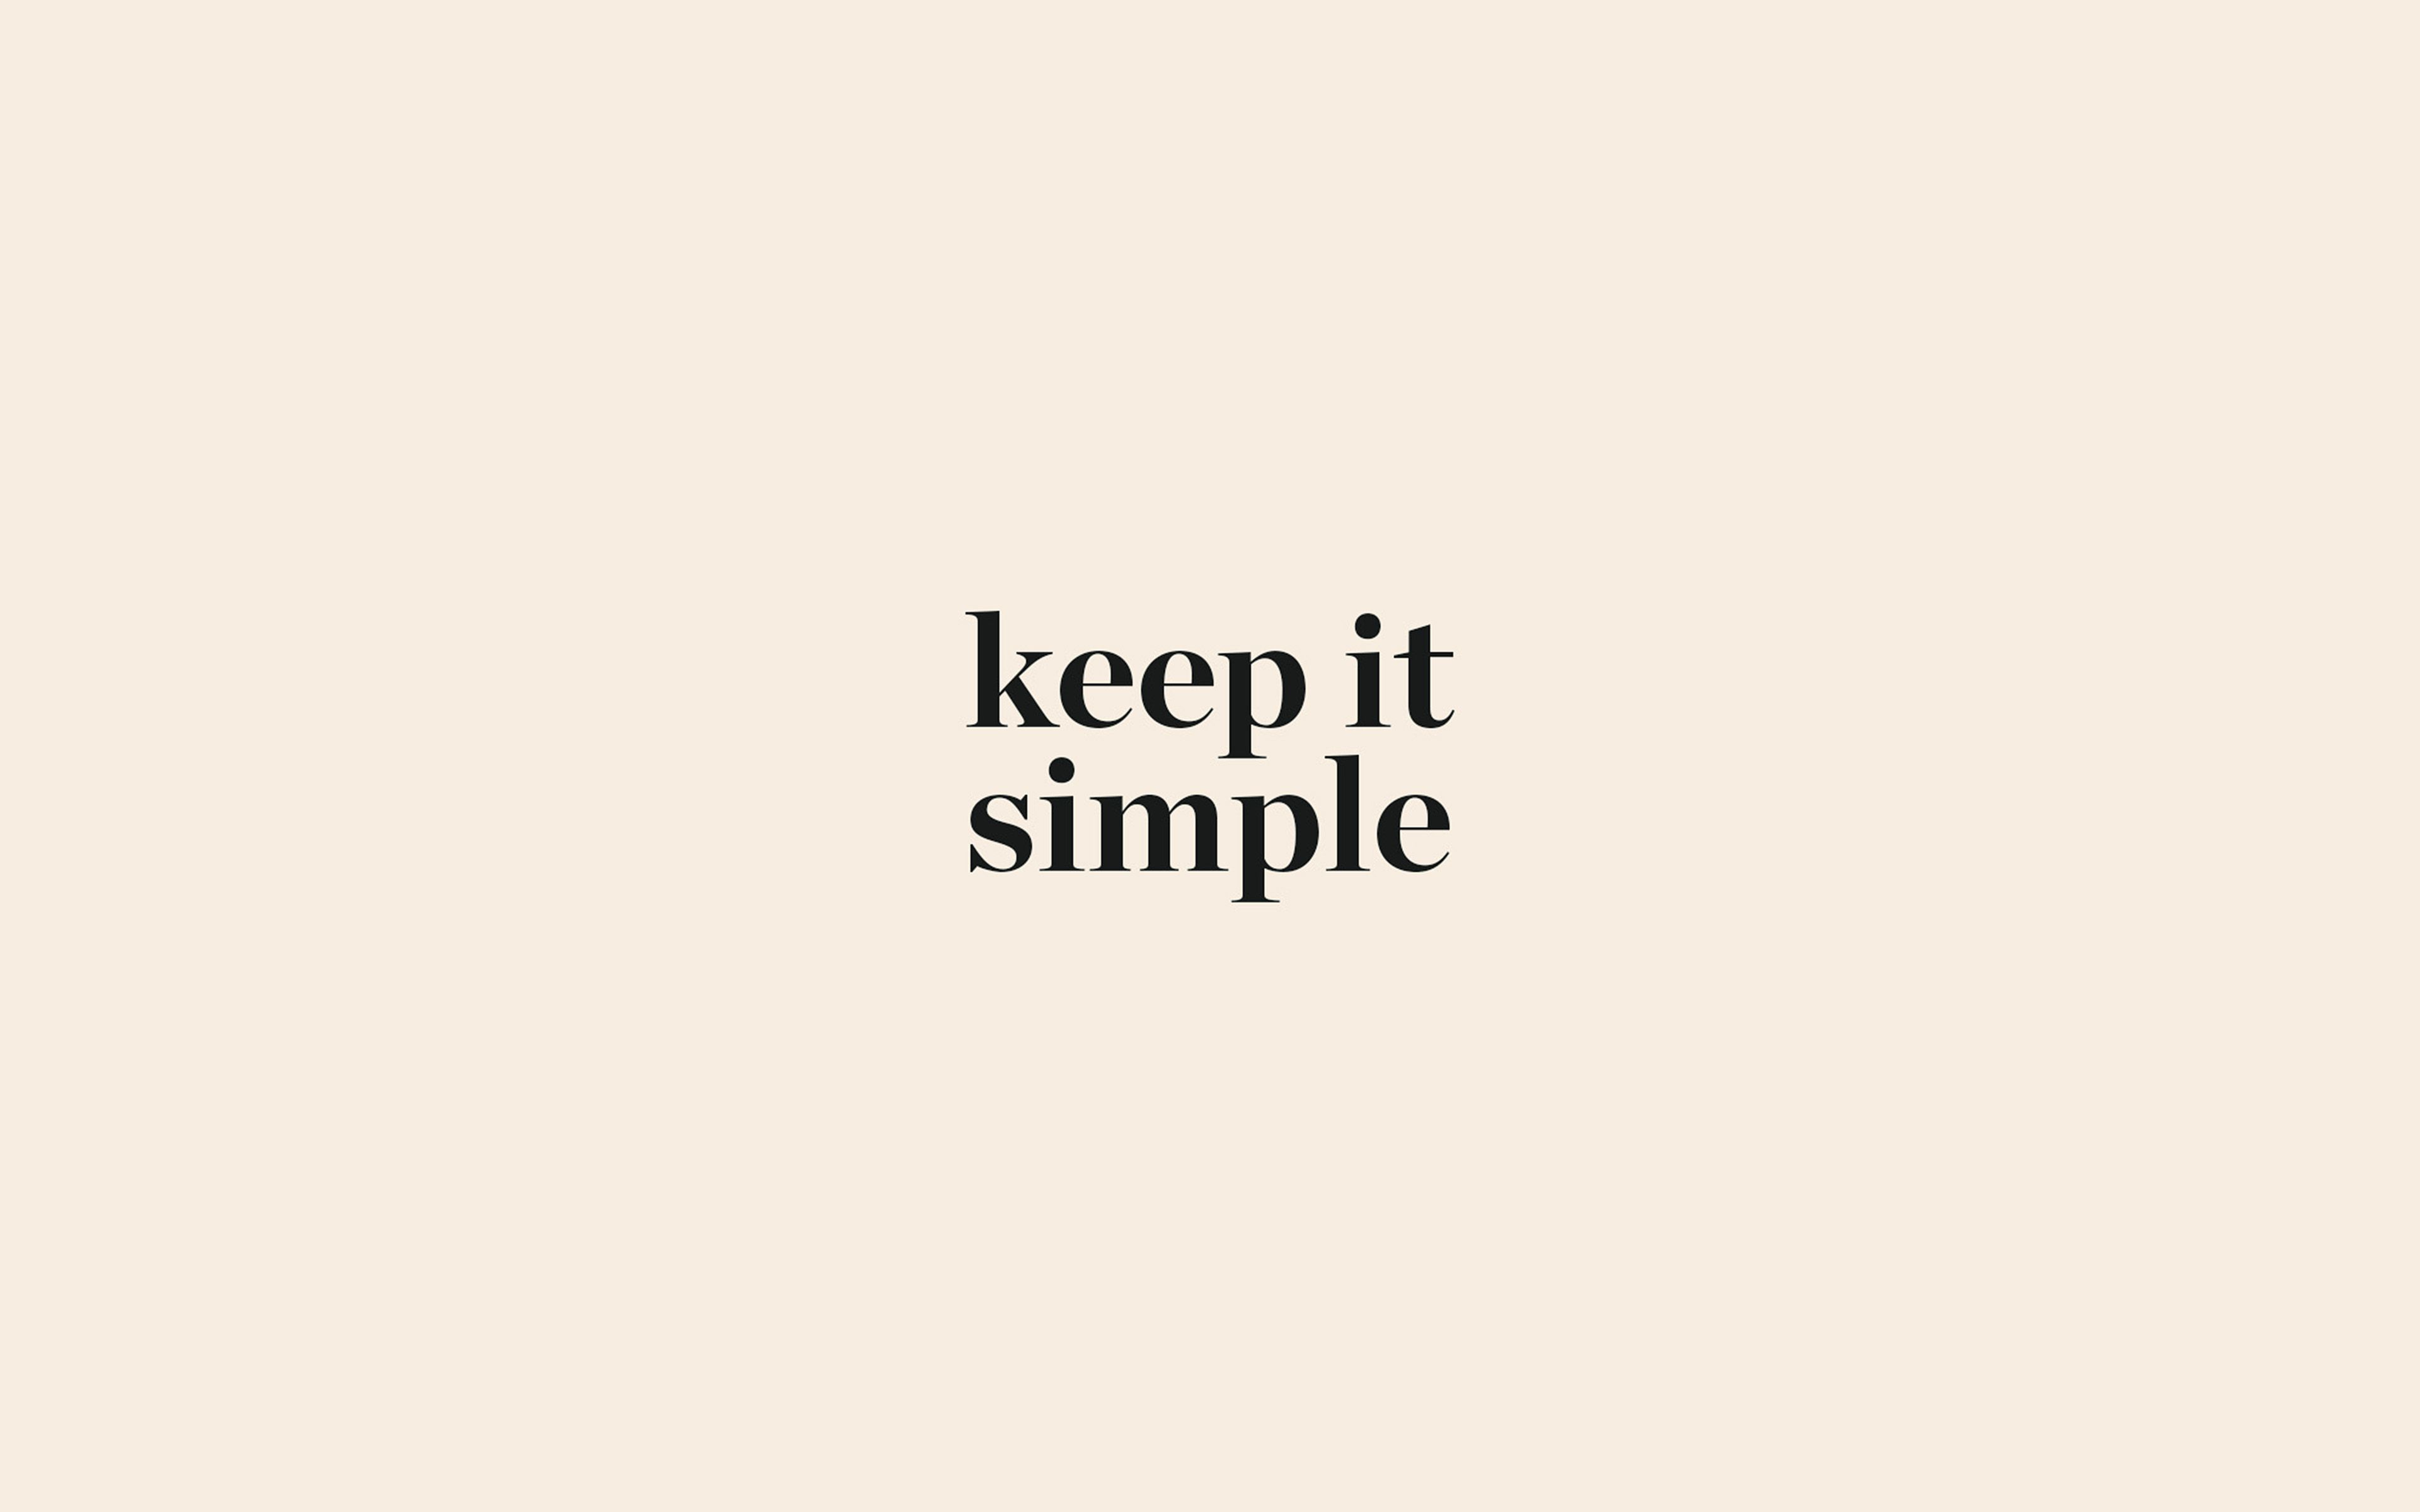 Keep simple